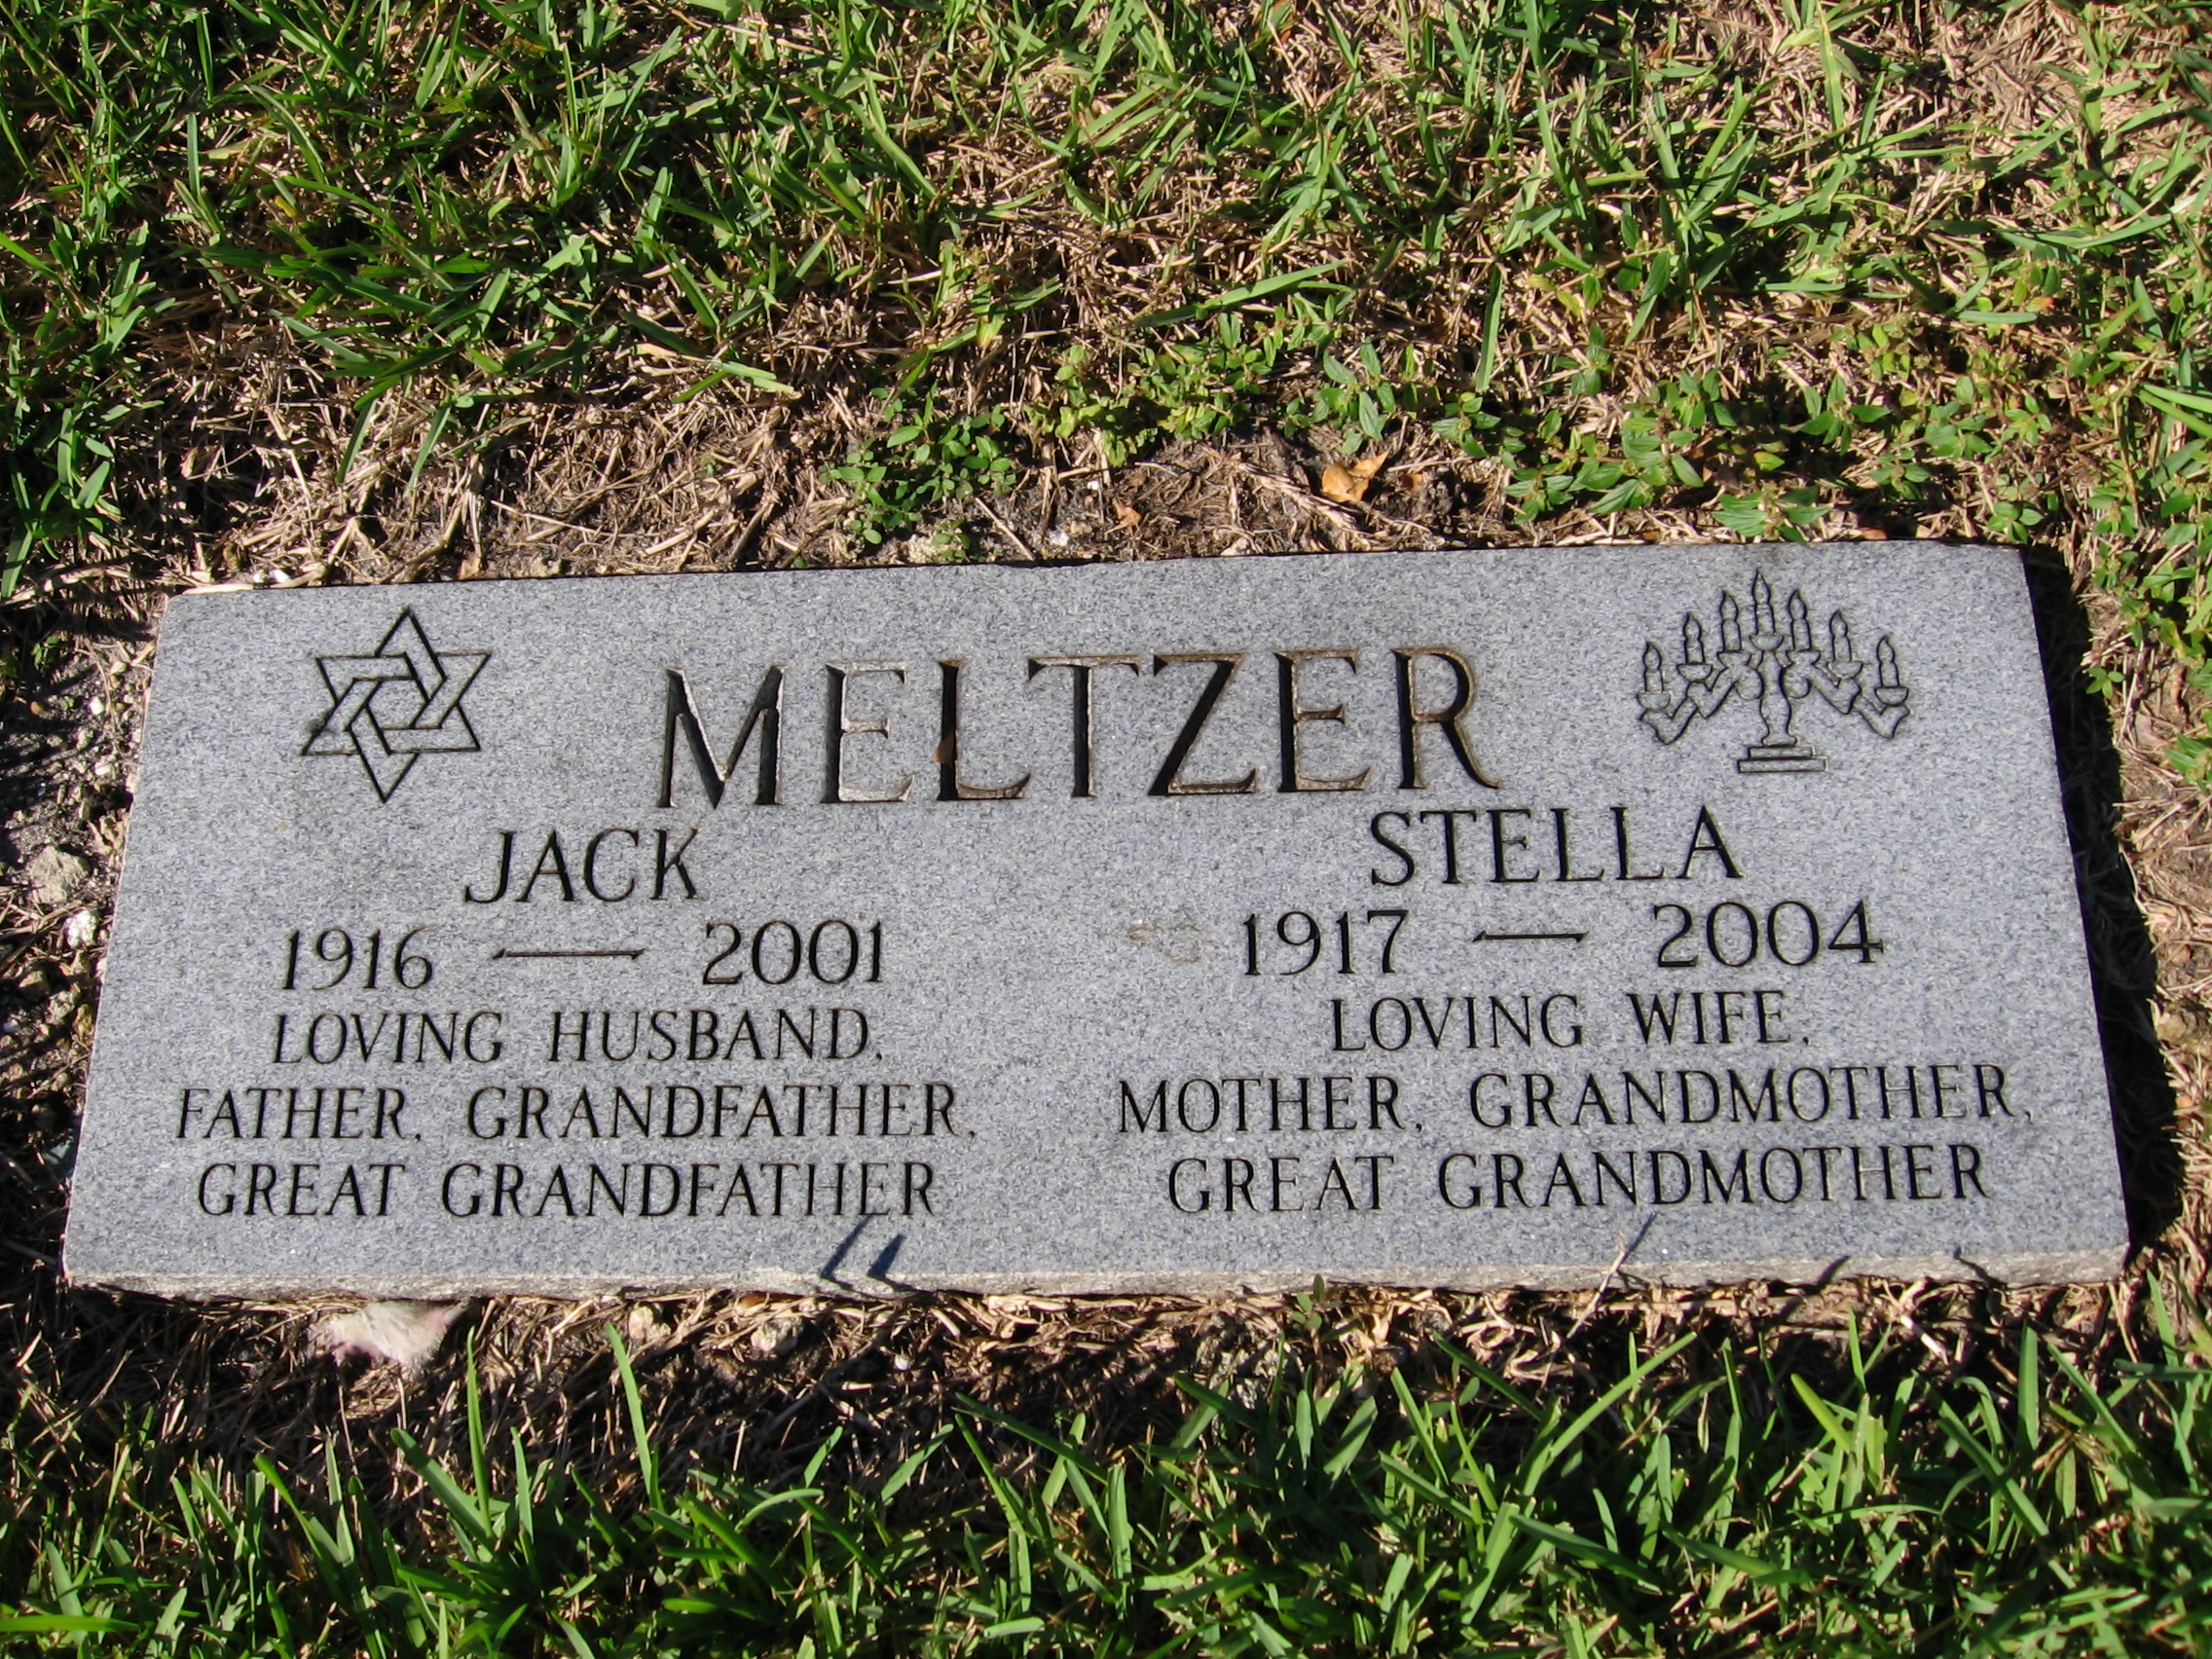 Jack Meltzer